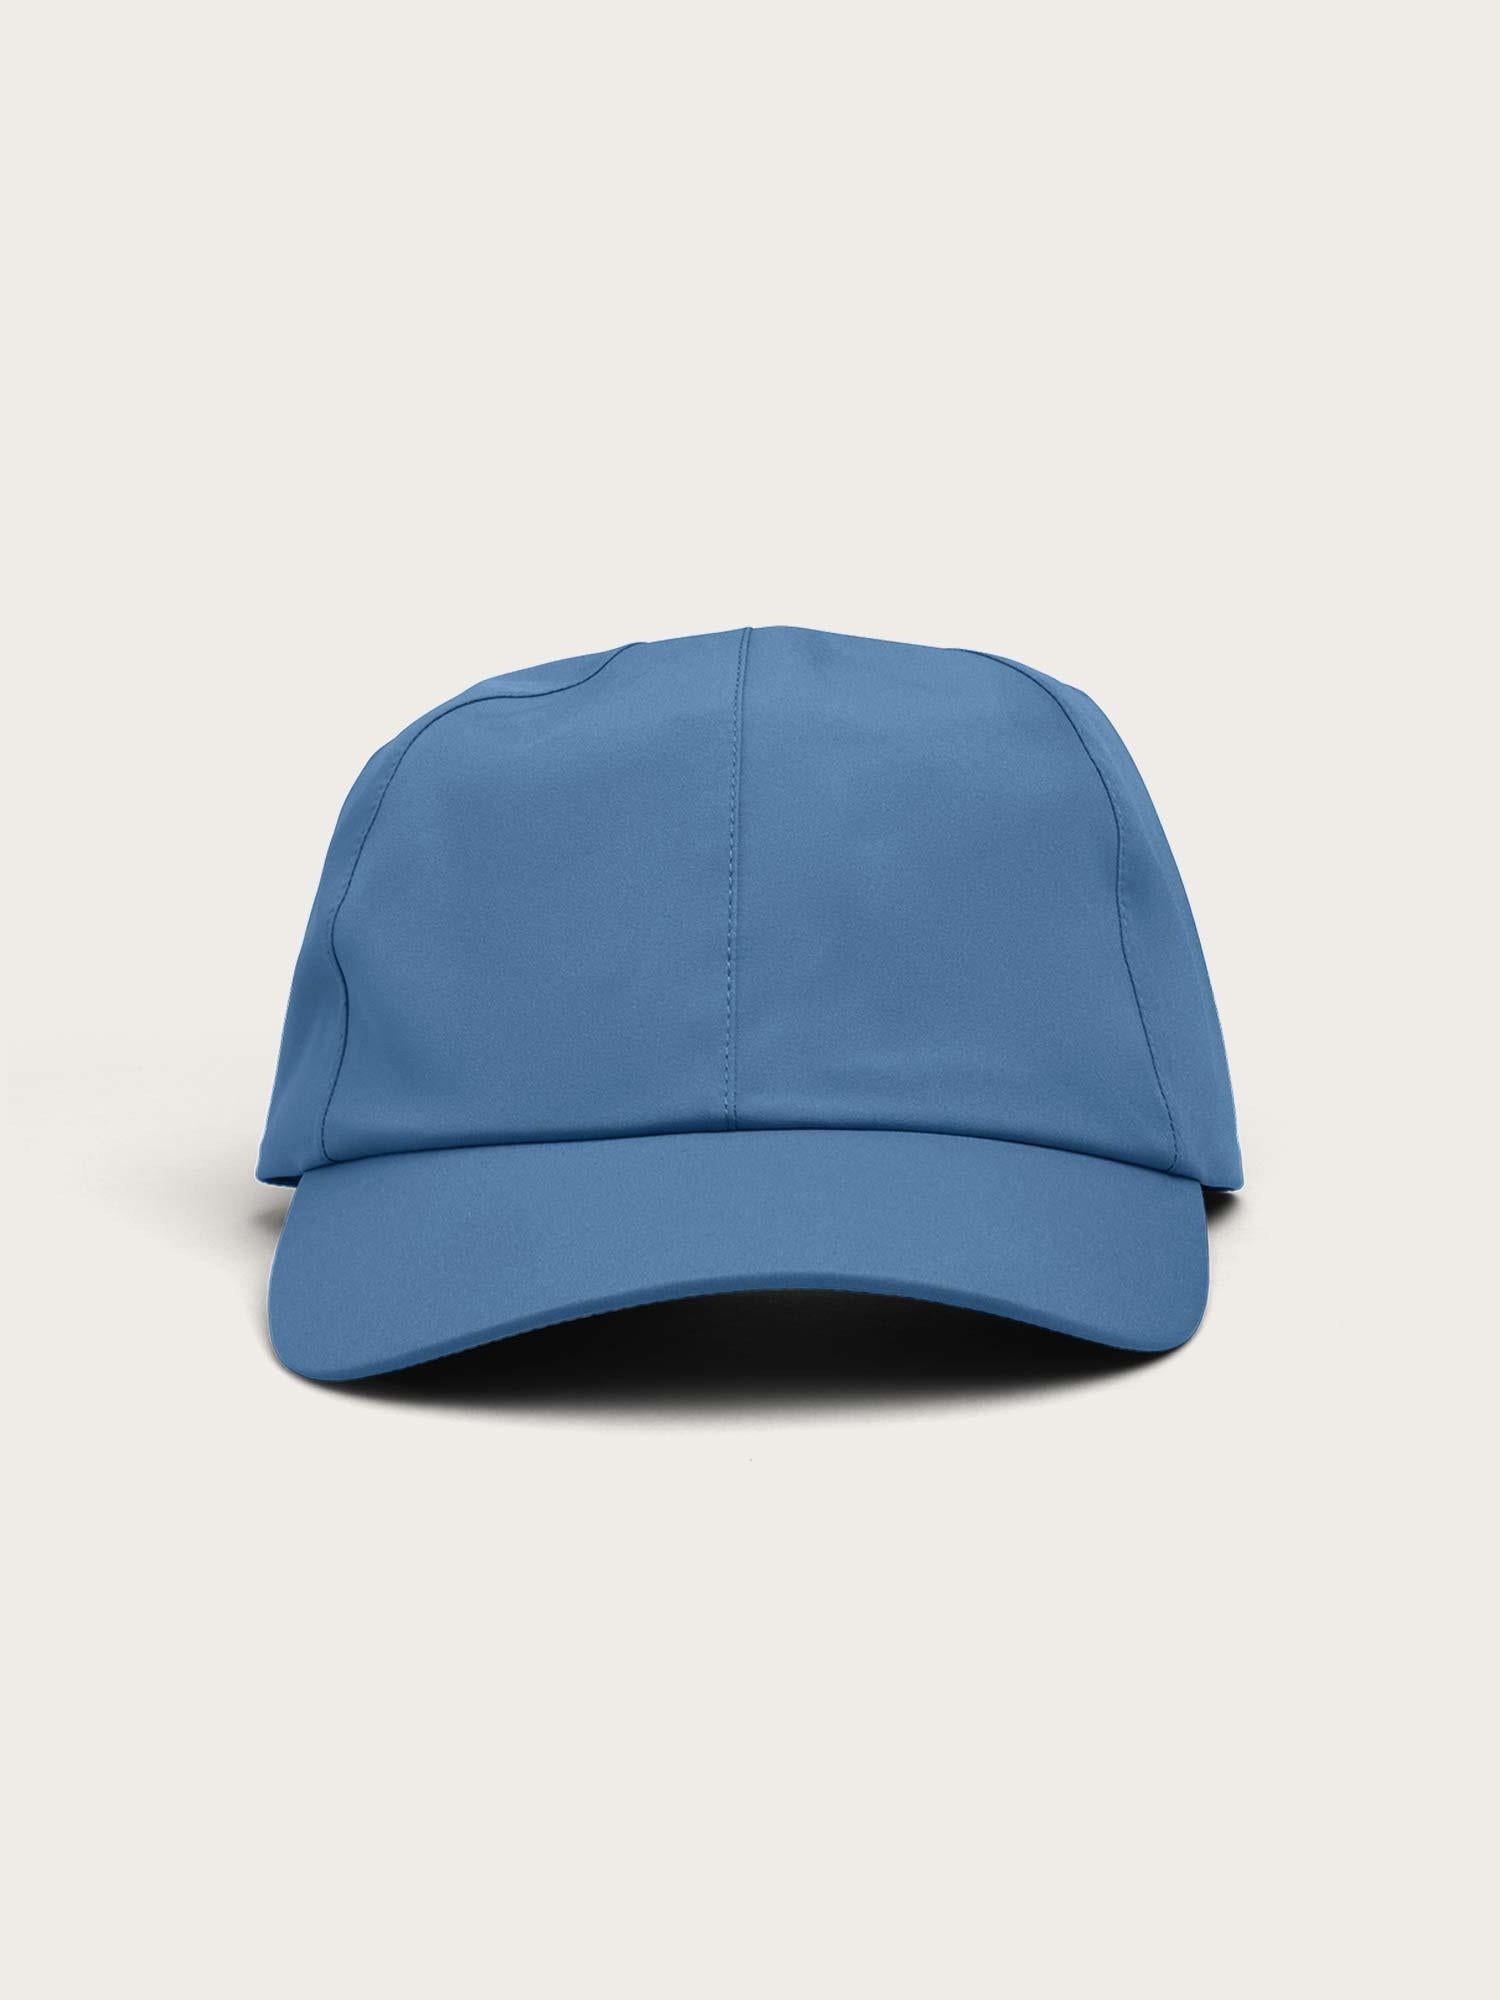 Hatlane Caps - Coronet Blue